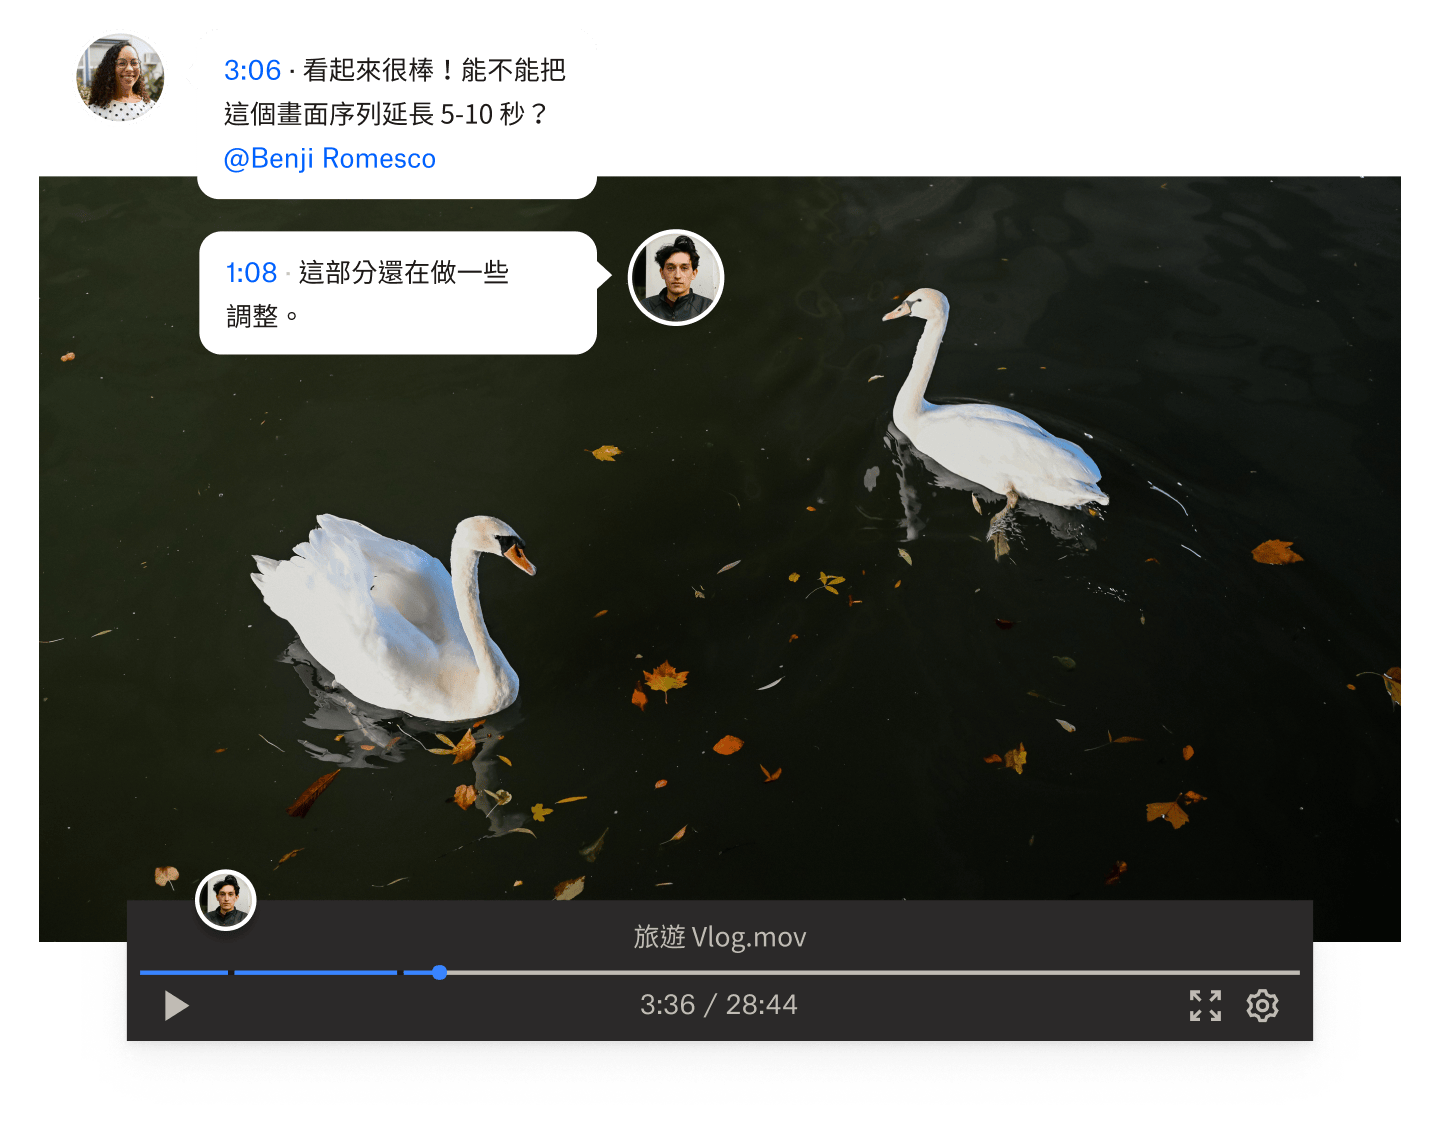 兩個人在兩隻天鵝游泳的 Dropbox 影片檔案上新增時間碼留言。